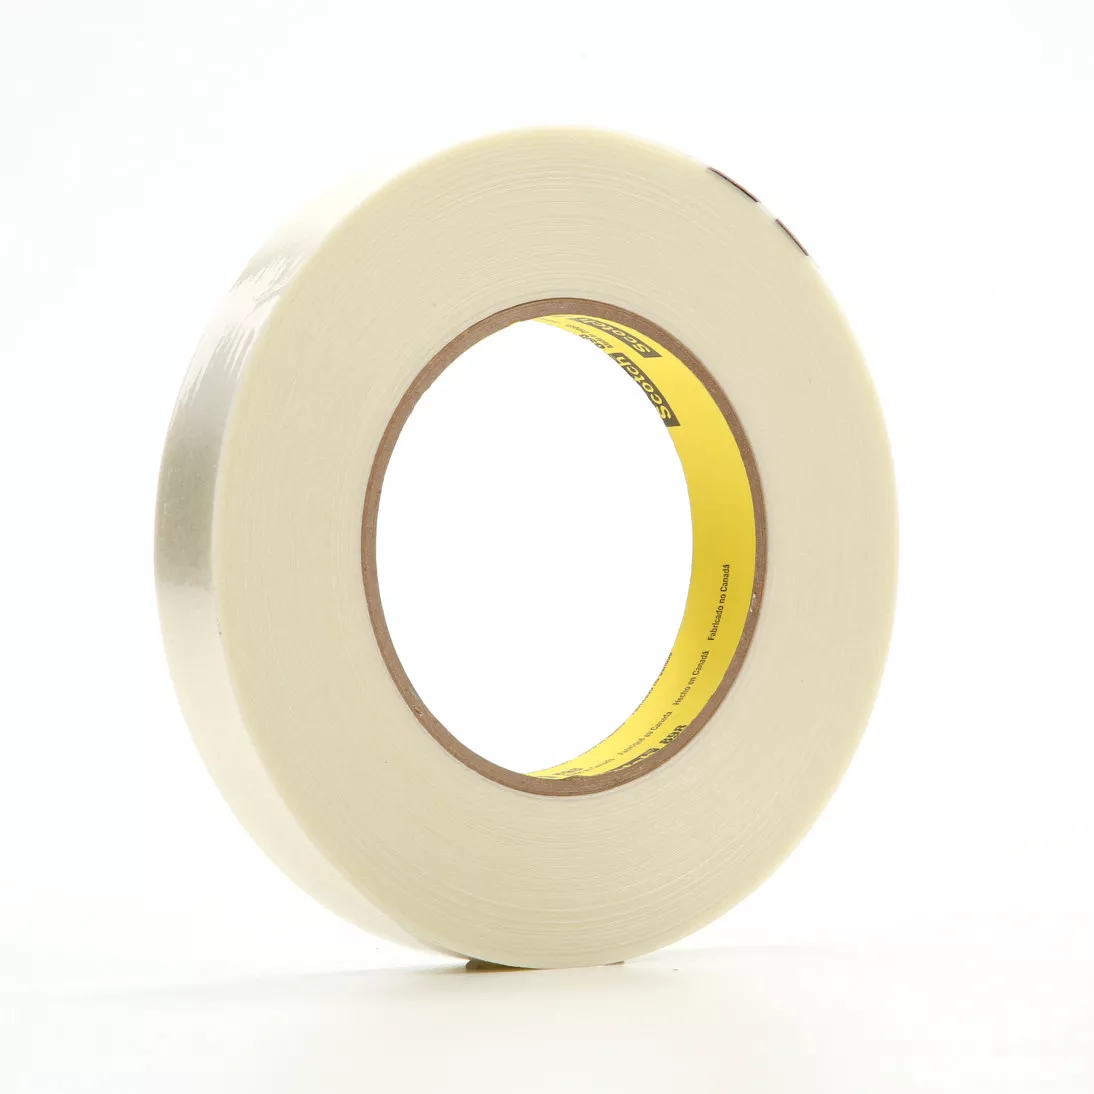 Scotch® Filament Tape 898, Clear, 18 mm x 330 m, 6.6 mil, 8 rolls per
case